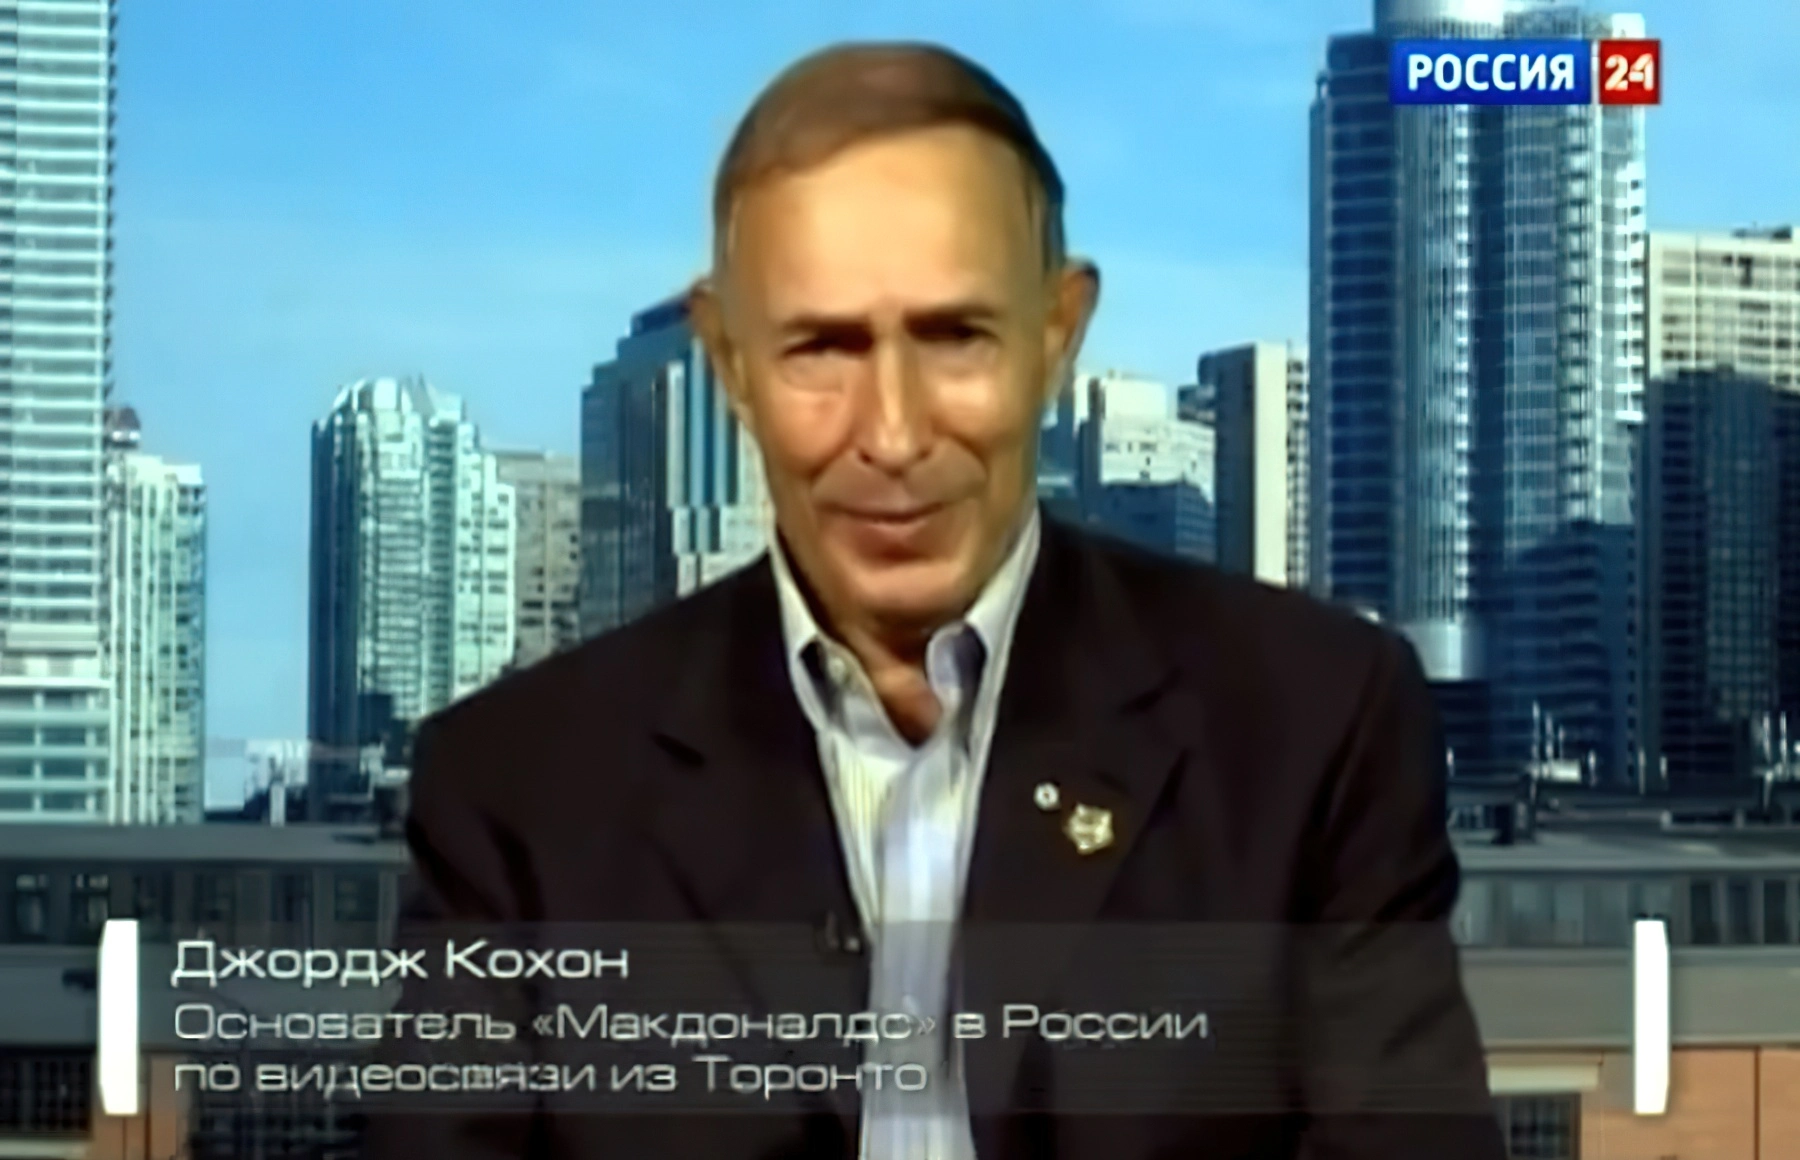 Джордж Кохон - основатель компании «McDonald's» в России